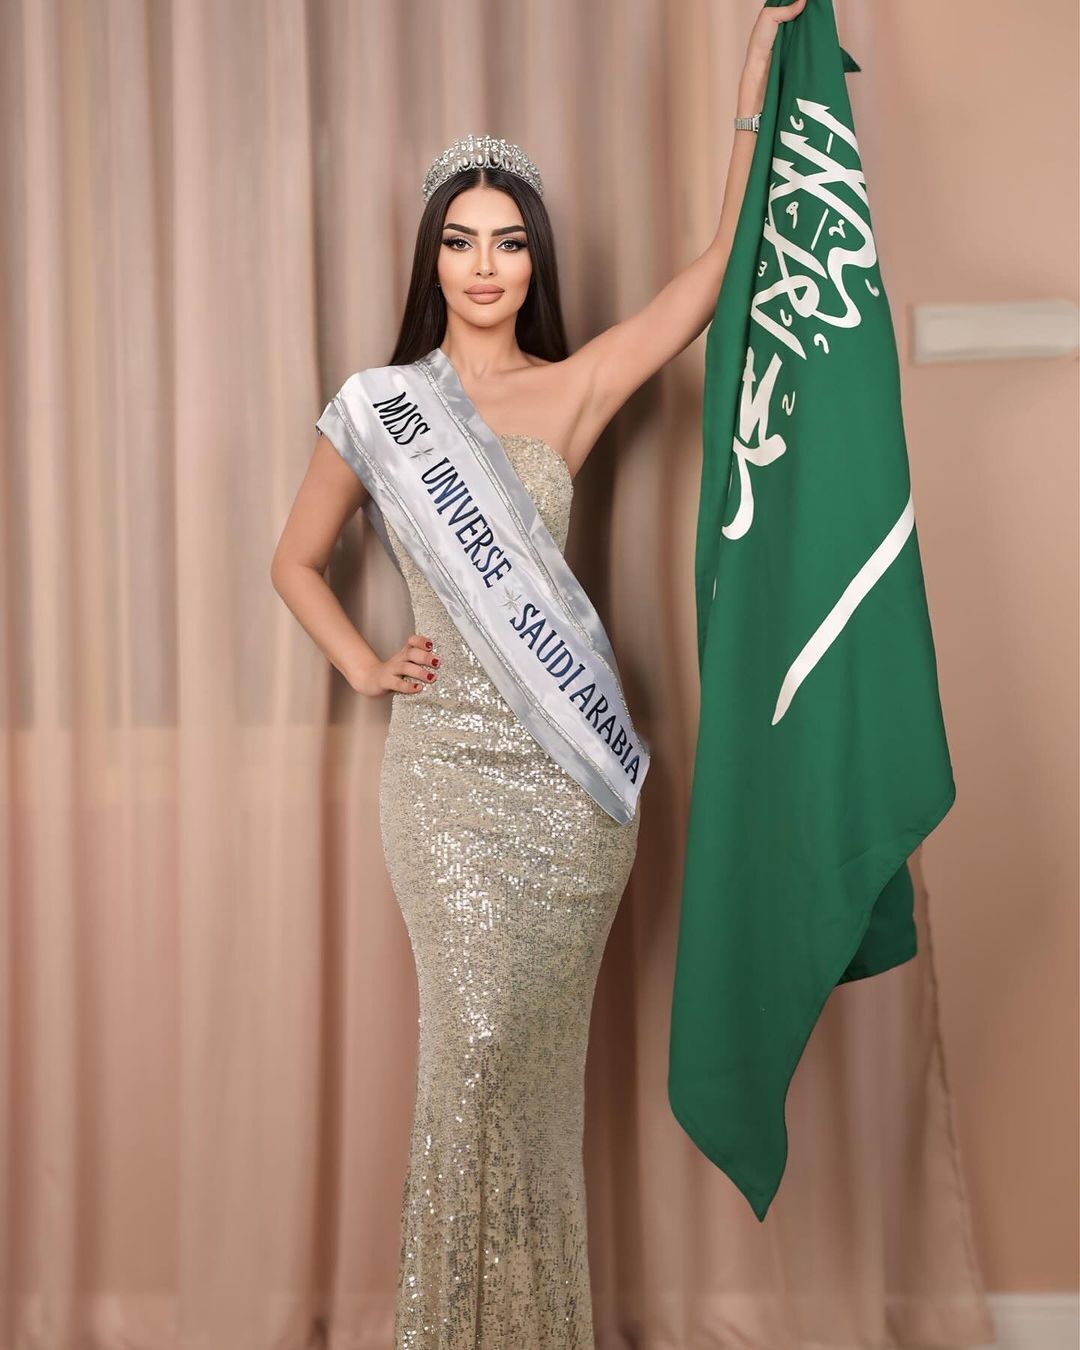 Організатори "Міс Всесвіт" спростували участь Саудівської Аравії в конкурсі і звинуватили 27-річну модель у брехні